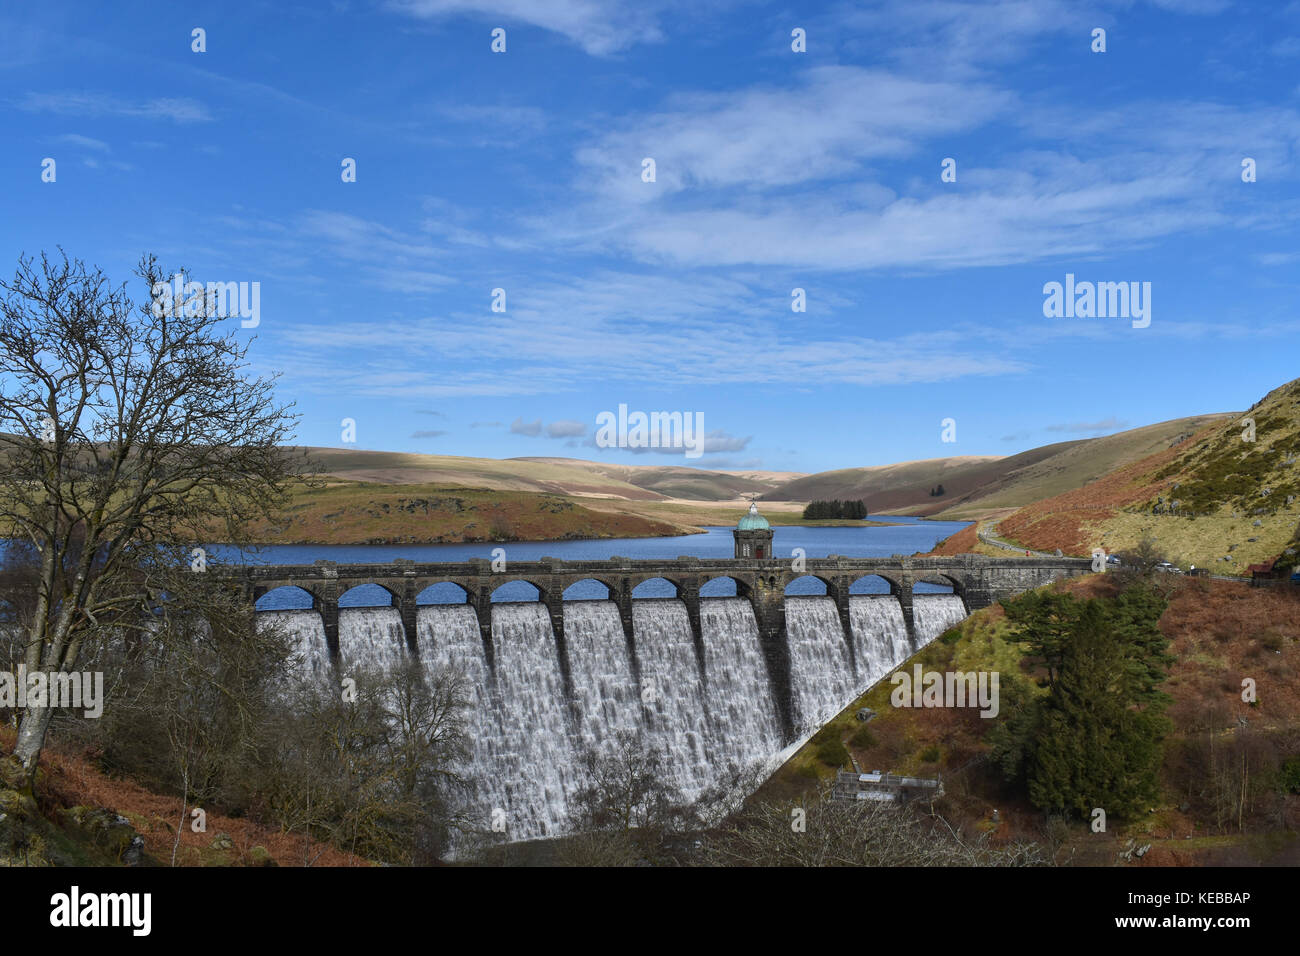 Le barrage entre craig craig goch goch et penygarreg reservoir réservoir dans la vallée de l'elan, Pays de Galles, Royaume-Uni Banque D'Images